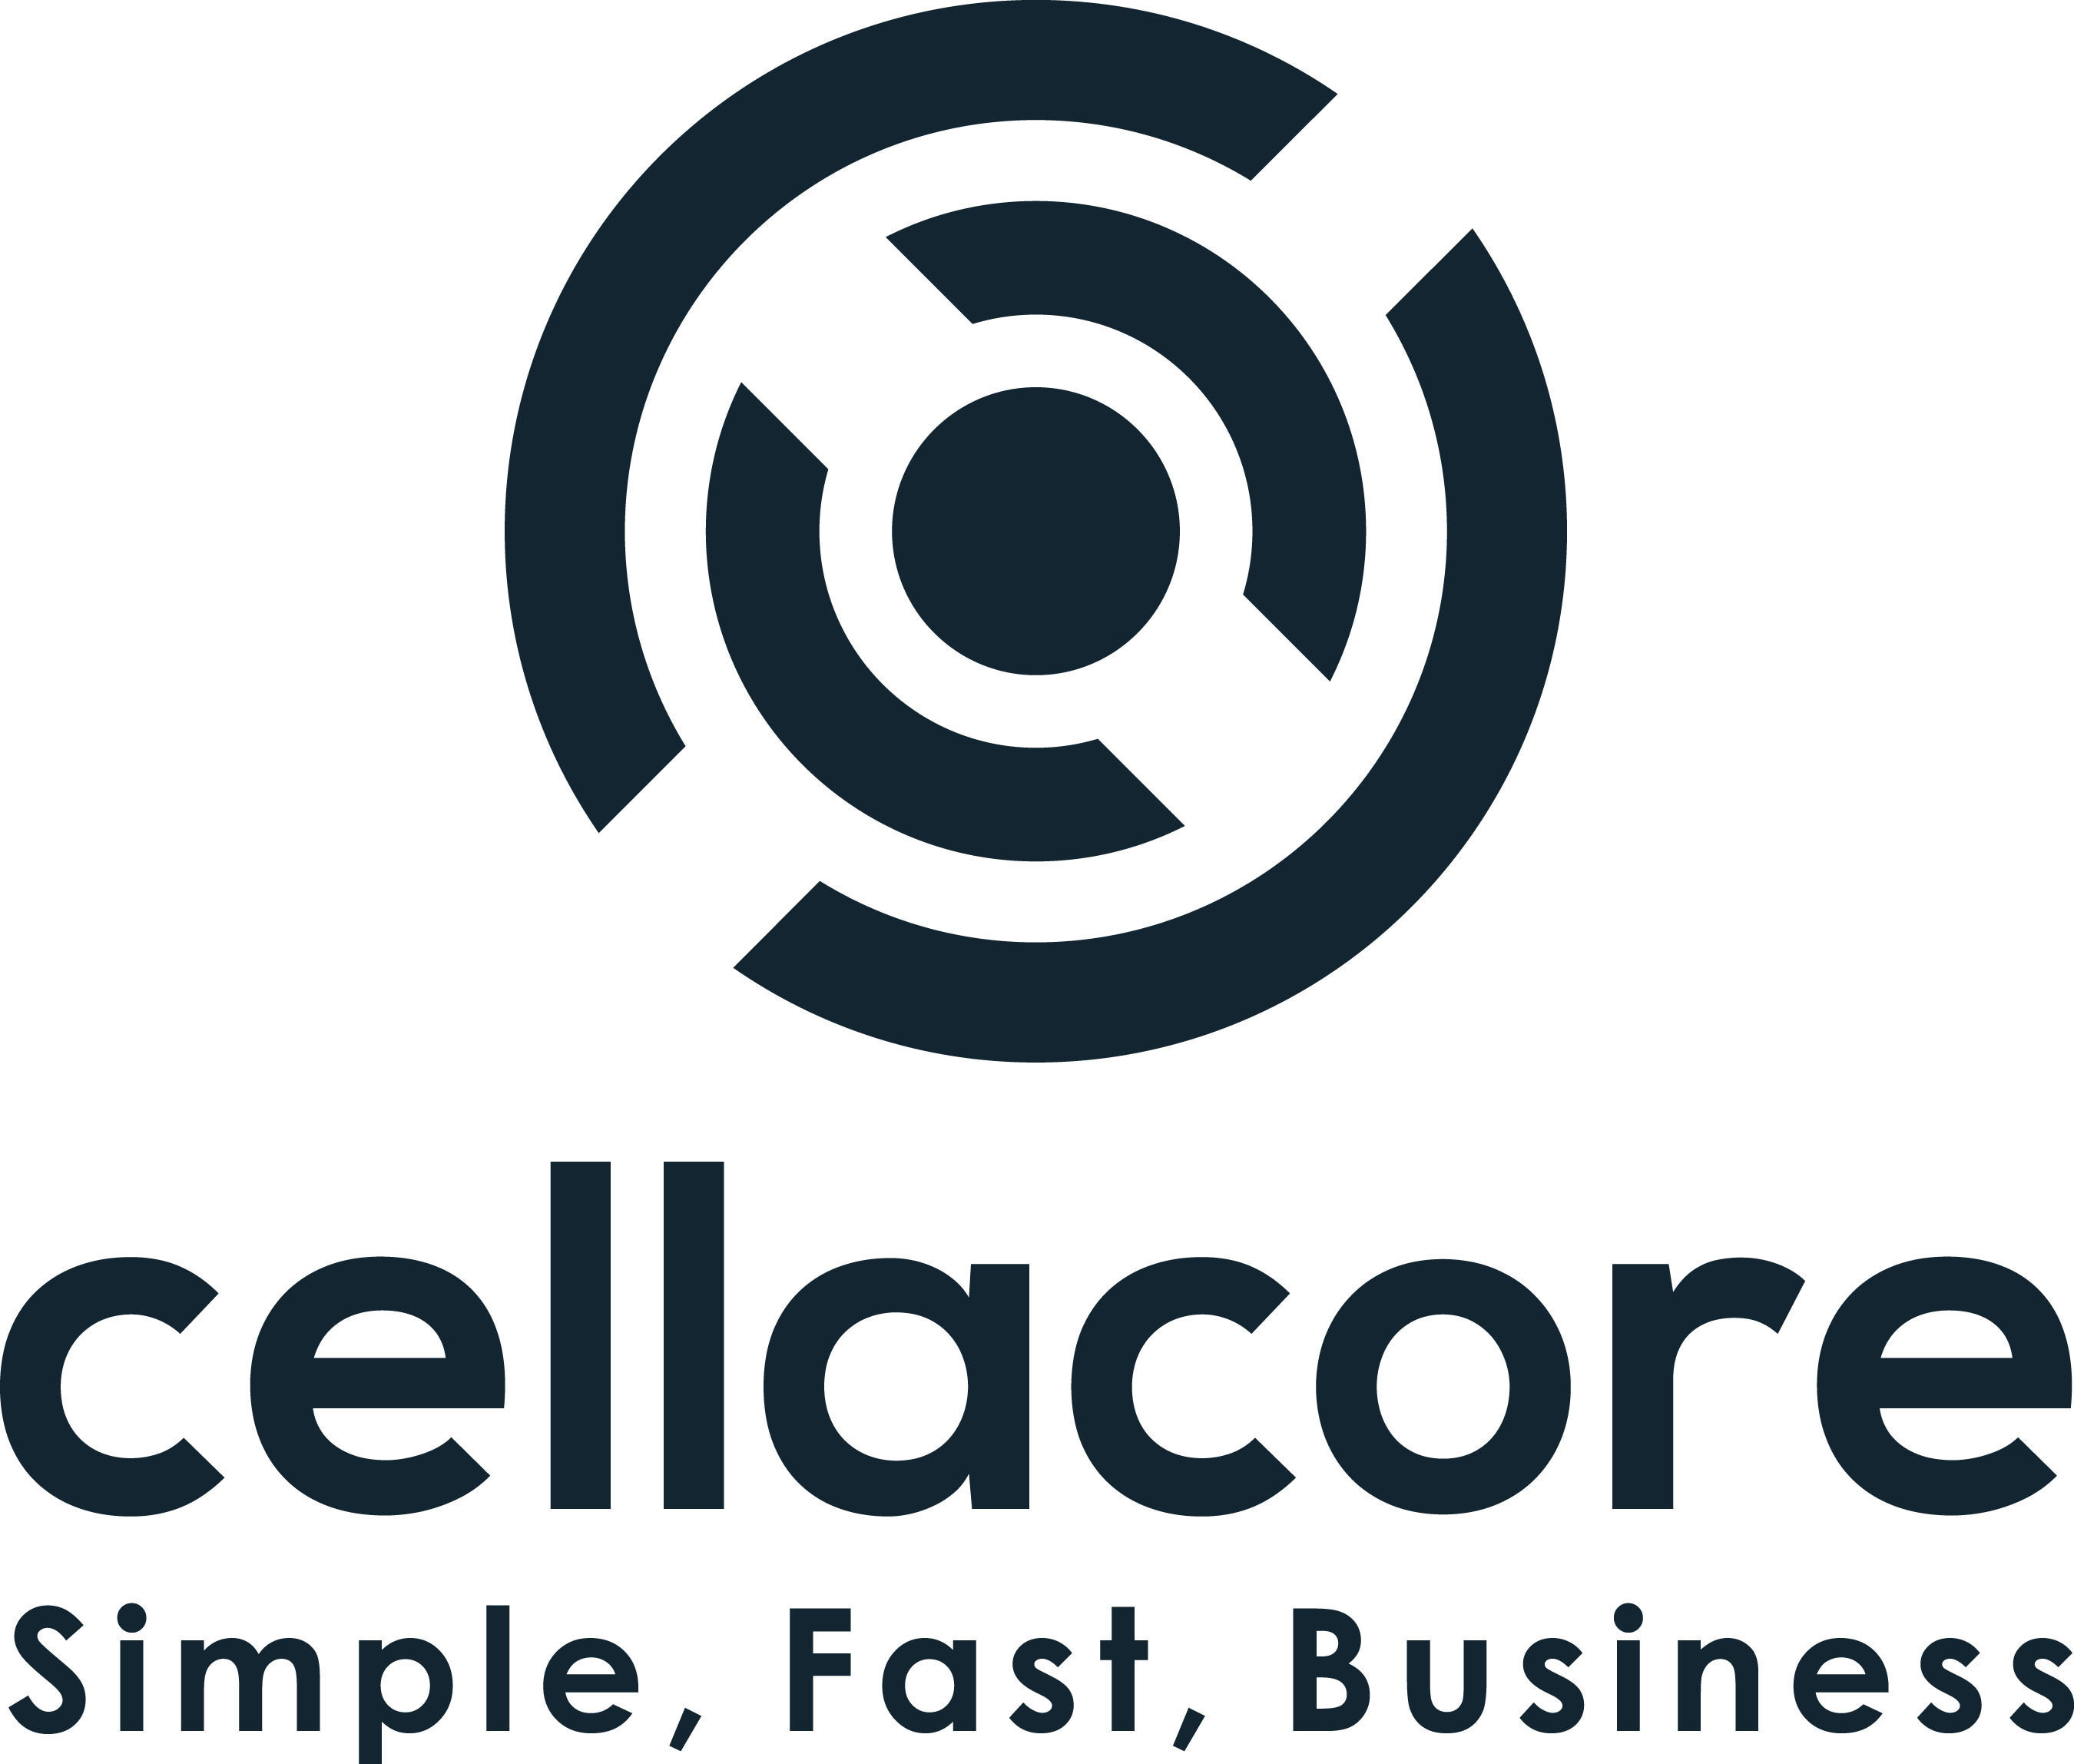 Cellacore Logo